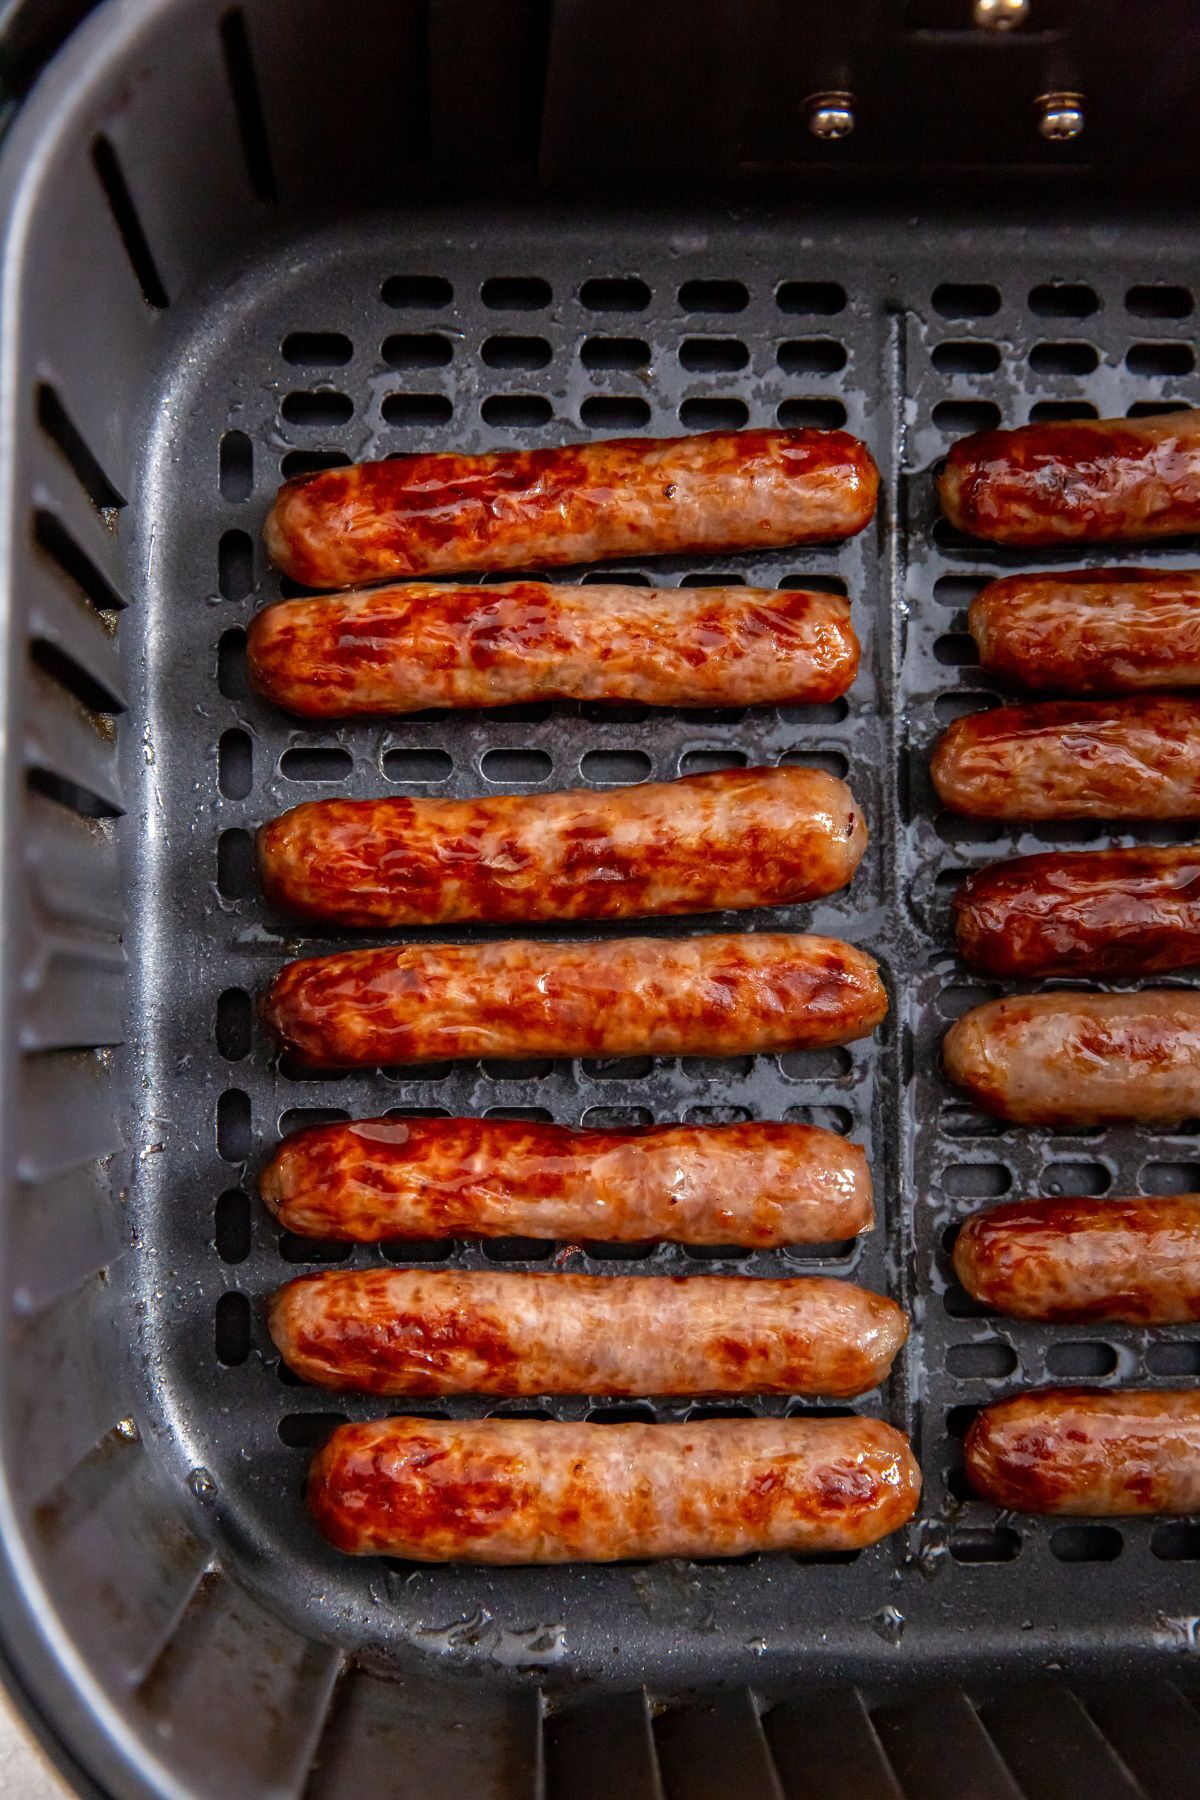 breakfast sausage in the air fryer basket